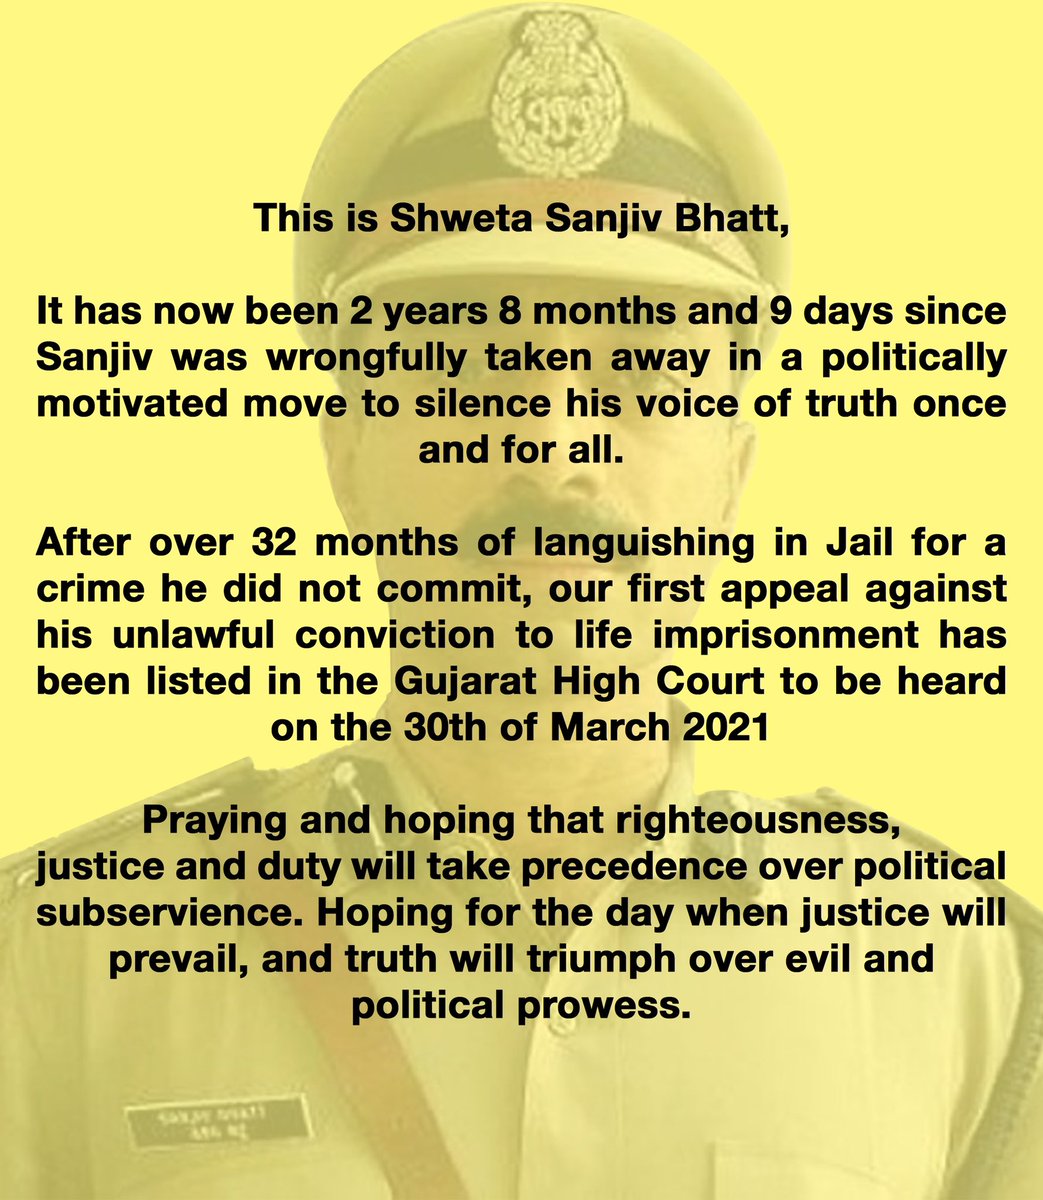 This is Shweta Sanjiv Bhatt...
#JusticeForSanjivBhatt #FreeSanjivBhatt #EnoughIsEnough